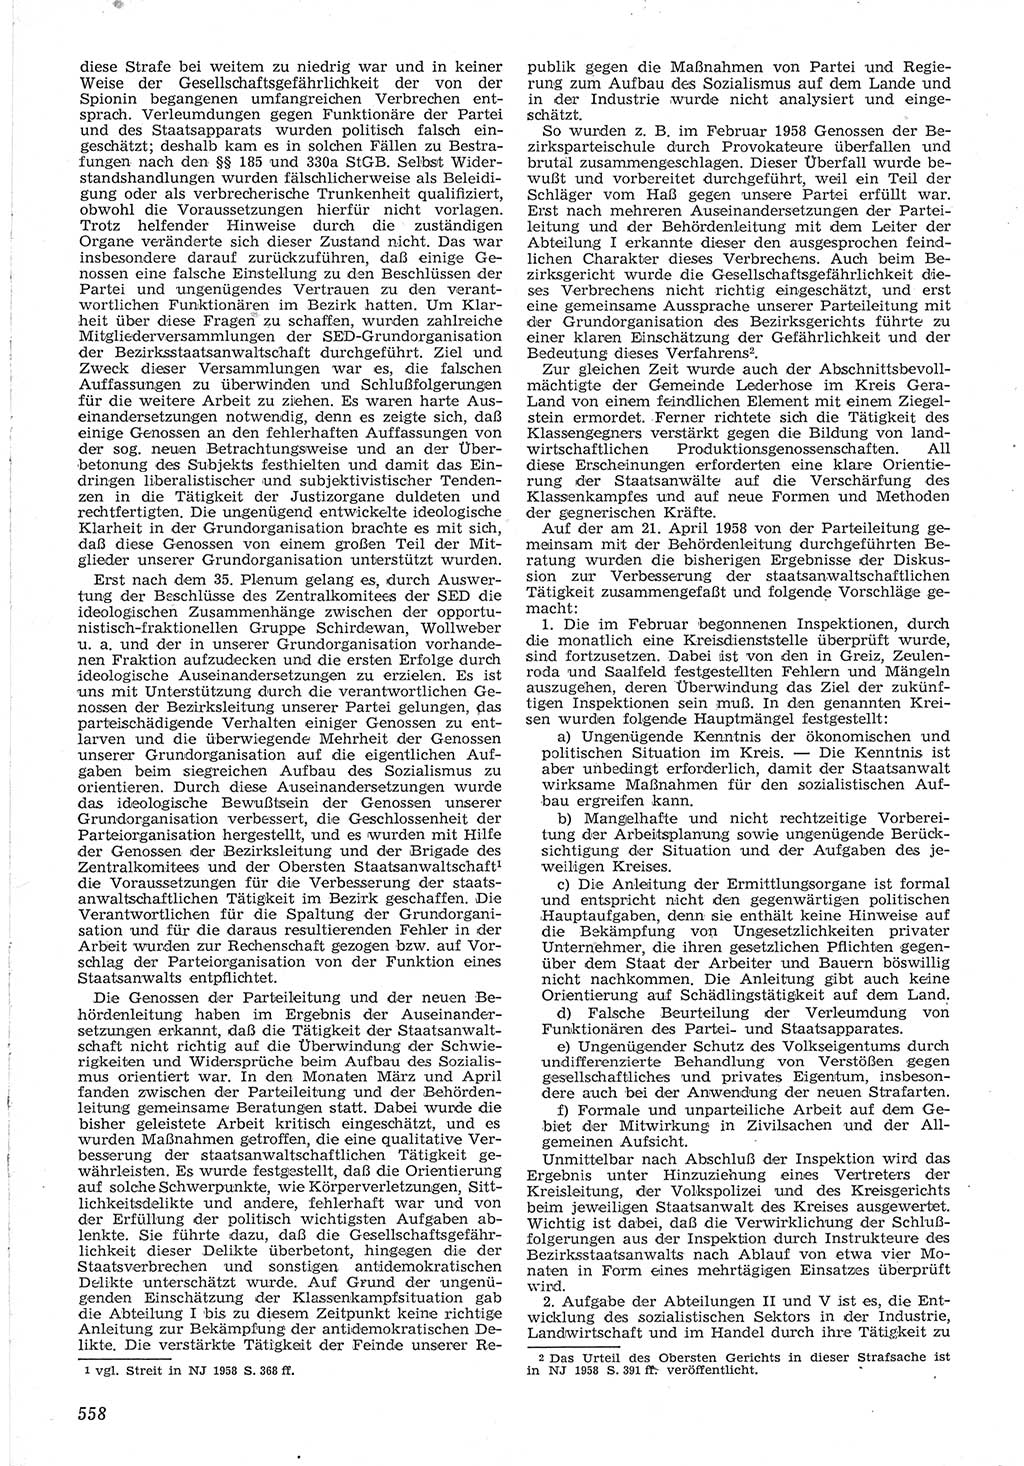 Neue Justiz (NJ), Zeitschrift für Recht und Rechtswissenschaft [Deutsche Demokratische Republik (DDR)], 12. Jahrgang 1958, Seite 558 (NJ DDR 1958, S. 558)